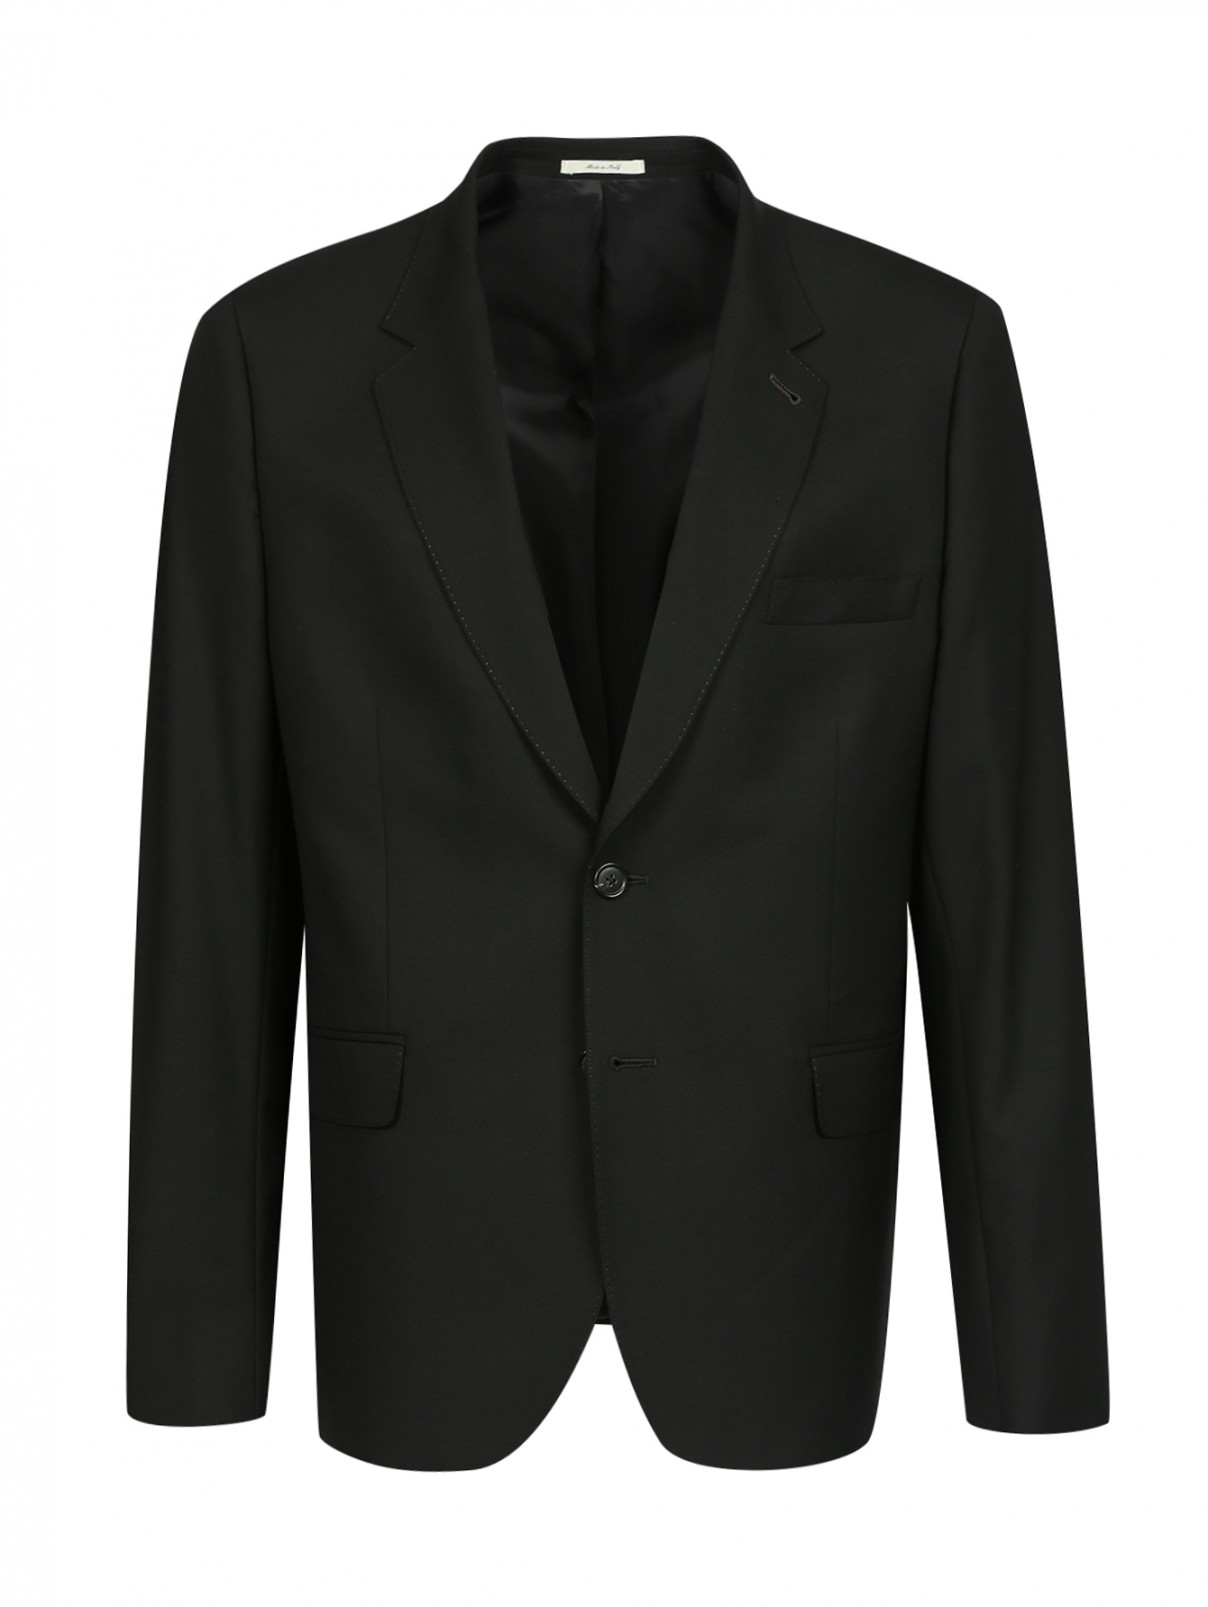 Пиджак однобортный из шерсти Paul Smith  –  Общий вид  – Цвет:  Черный